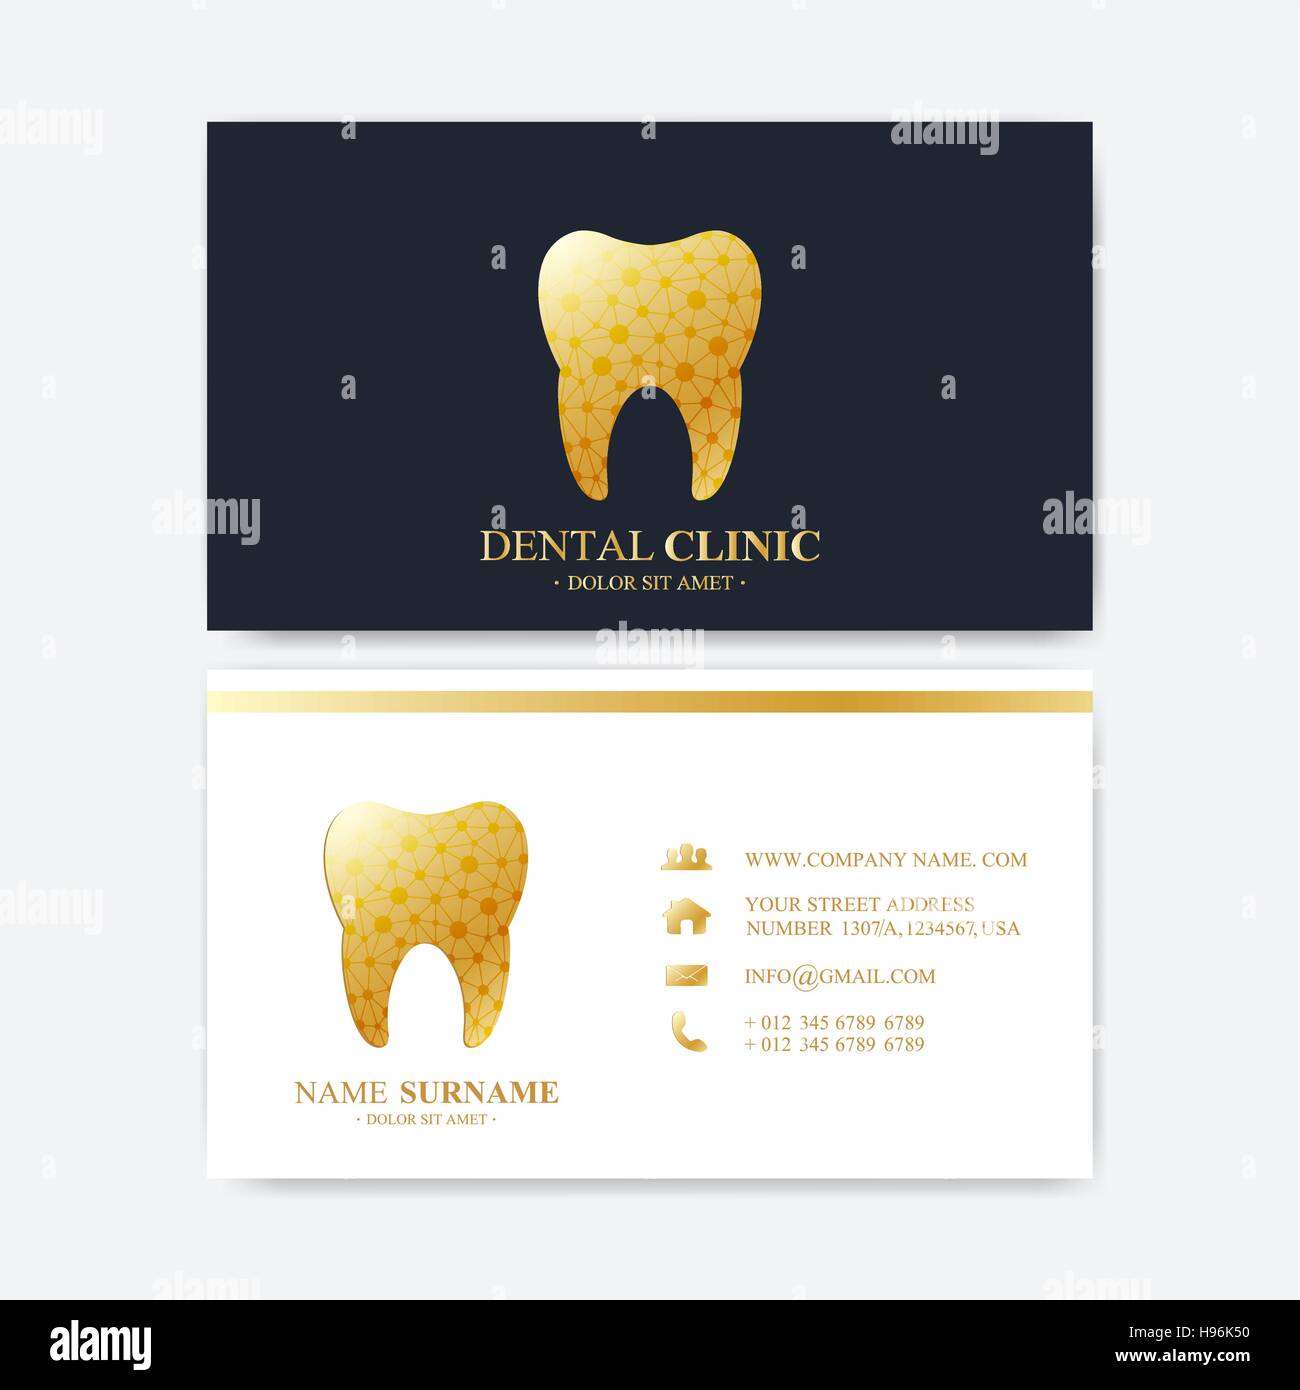 Premium Visitenkarten Druckvorlage Zahnklinik Visitenkarte Mit Zahn Logo Zahnarzt Office Mund Und Zahnpflege Zahn Implantate Medical Design Golden Stock Vektorgrafik Alamy